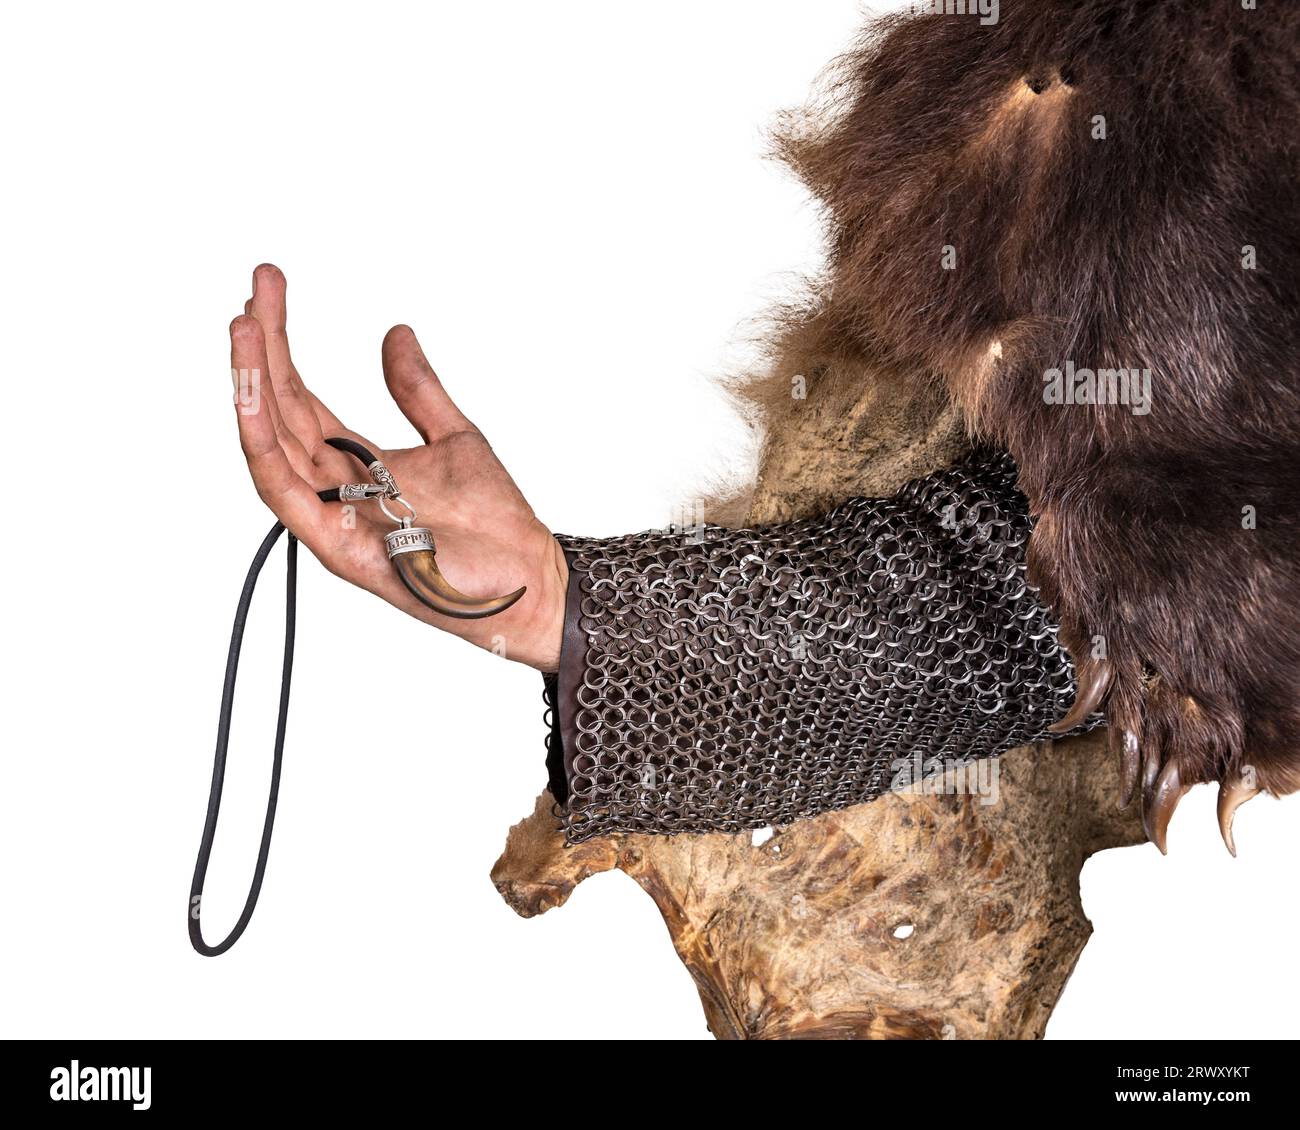 Main guerrier scandinave dans une peau d'ours, avec une décoration en forme de dent d'ours. Isolé sur blanc Banque D'Images